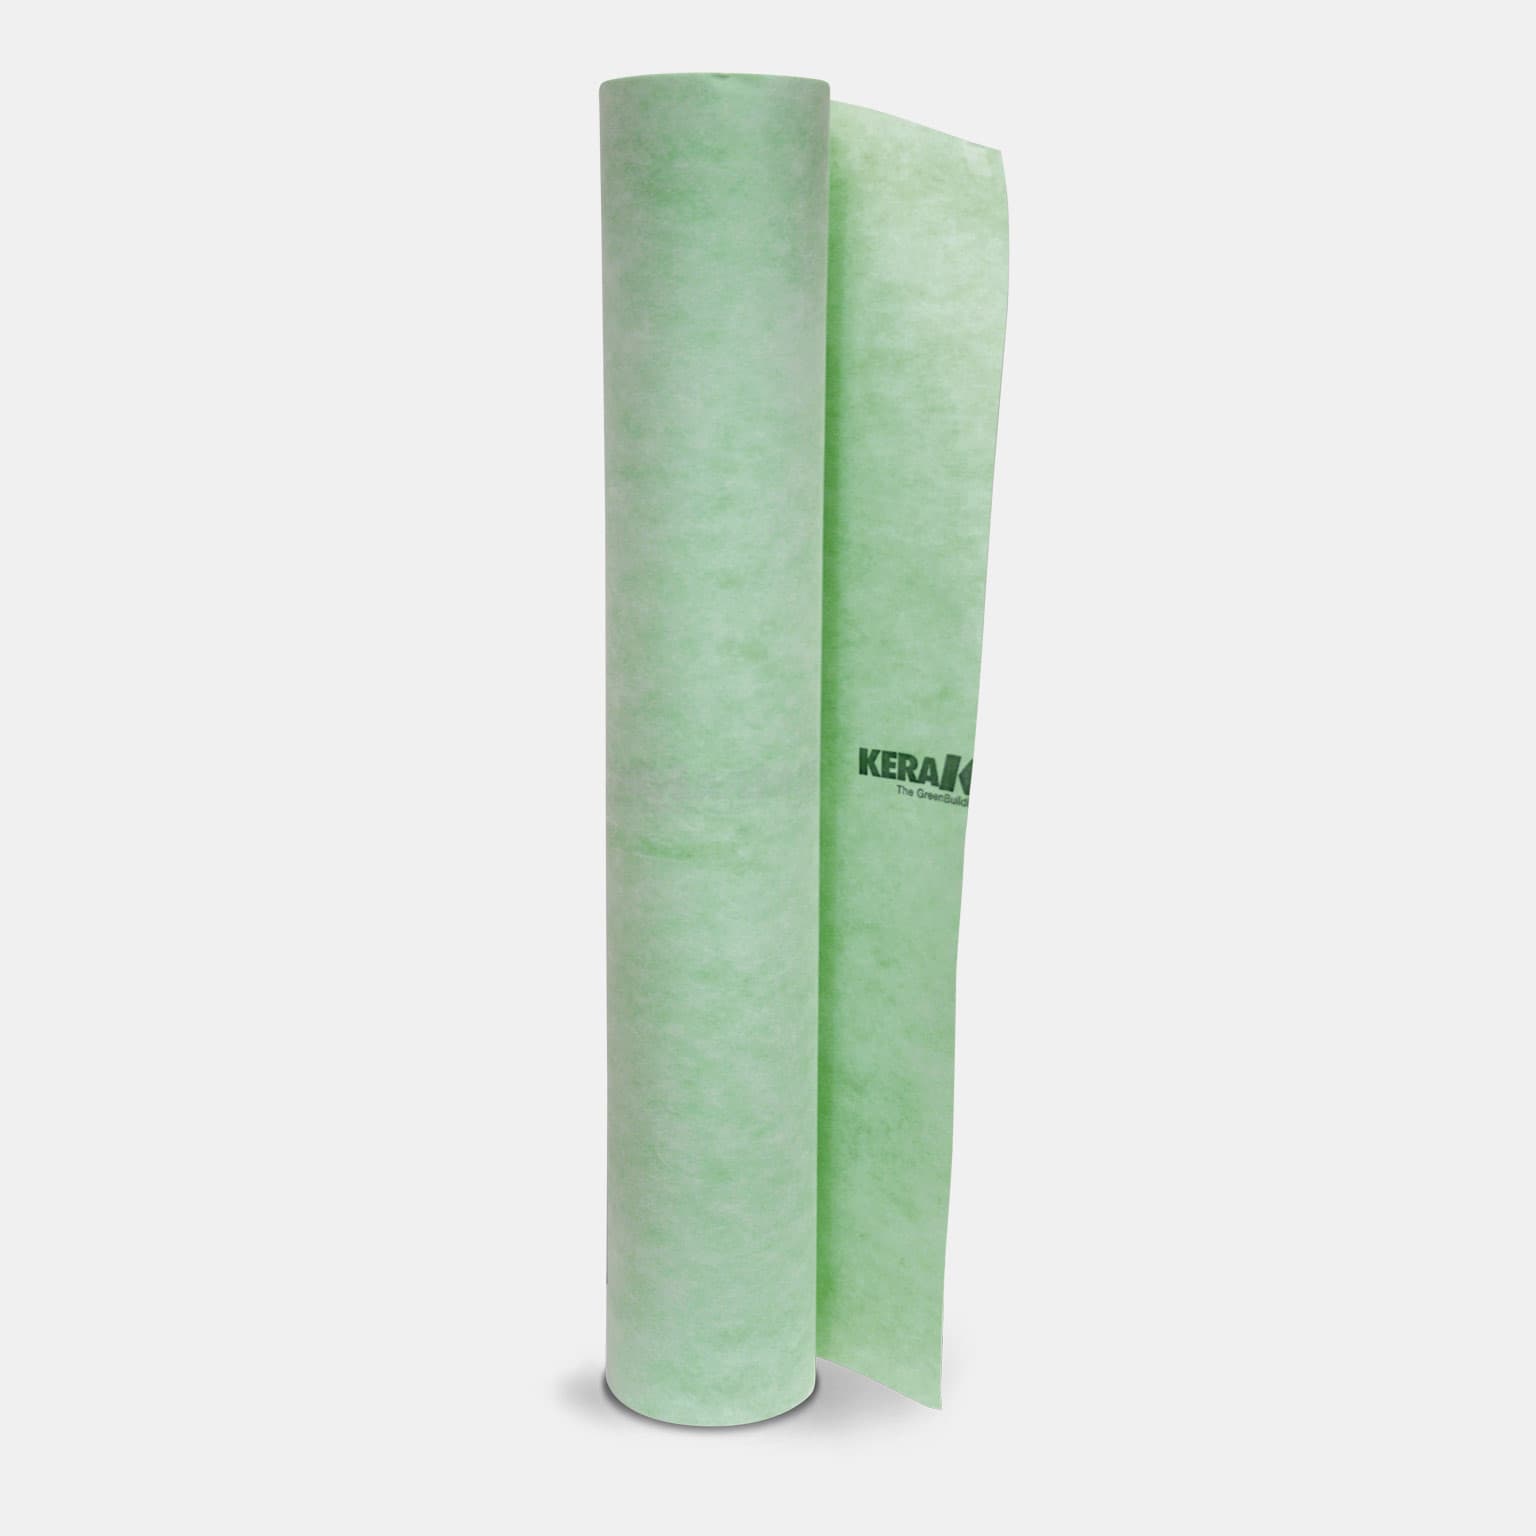 Kerakoll Aquastop Fabric: Fokozott tágulású, tépésálló, vékony, vízálló és repedés‑áthidaló polietilén lap, amely mindkét oldalán polipropilén szövettel van bevonva. Ideális törésmentes vízszigetelő rendszerként.